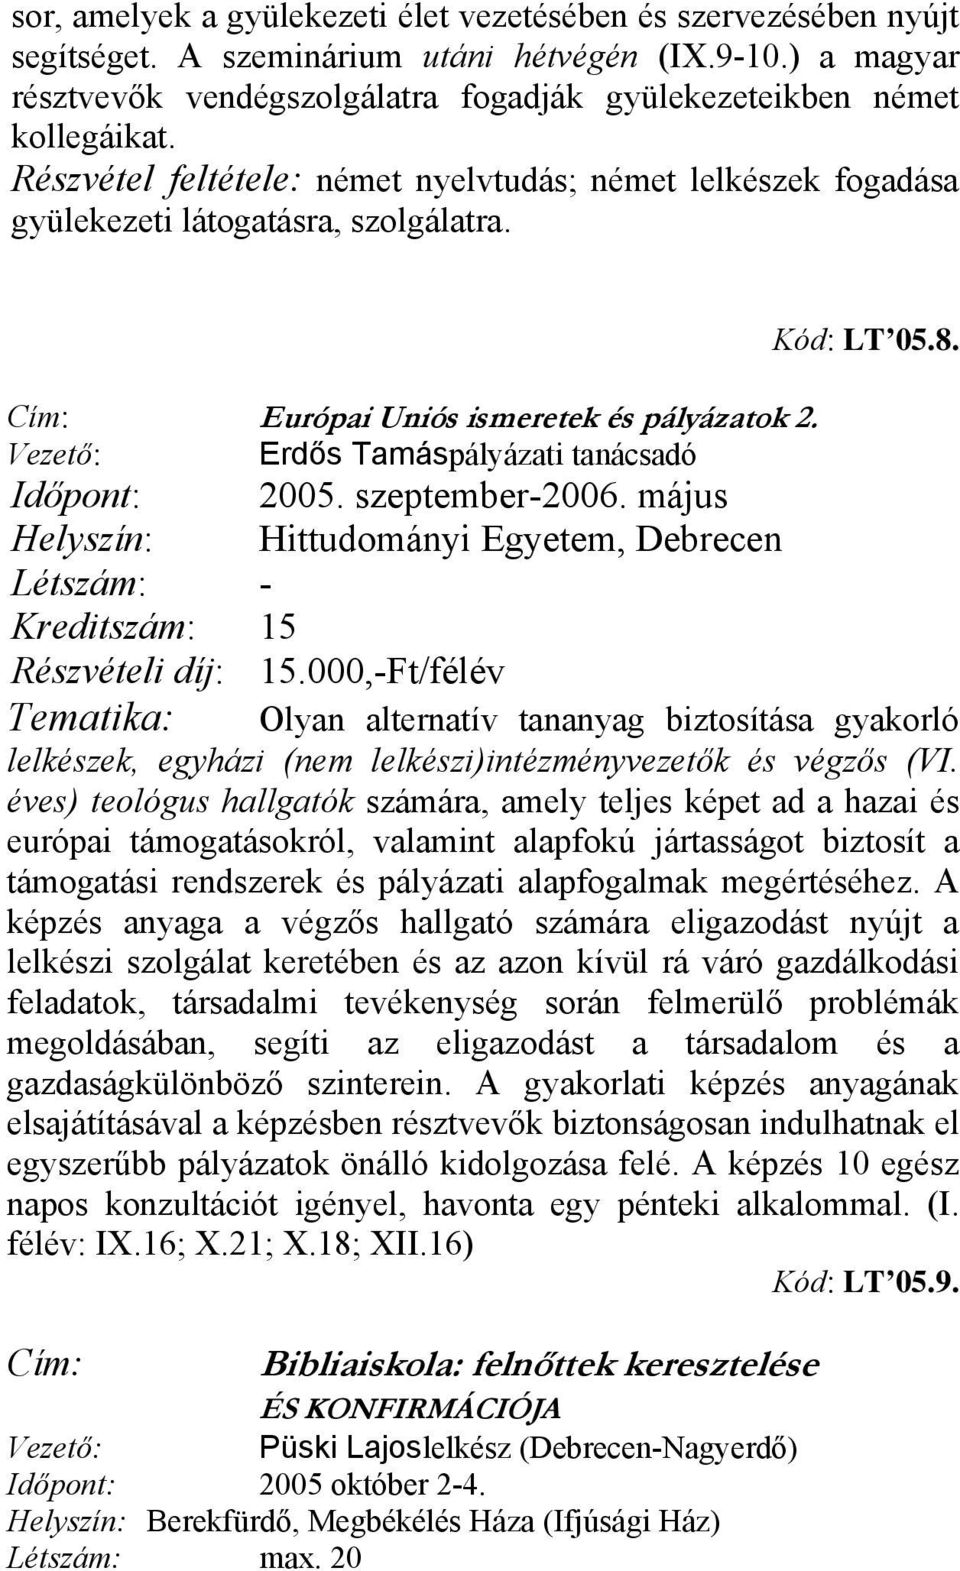 Cím: Európai Uniós ismeretek és pályázatok 2. Vezető: Erdős Tamáspályázati tanácsadó Időpont: 2005. szeptember-2006.